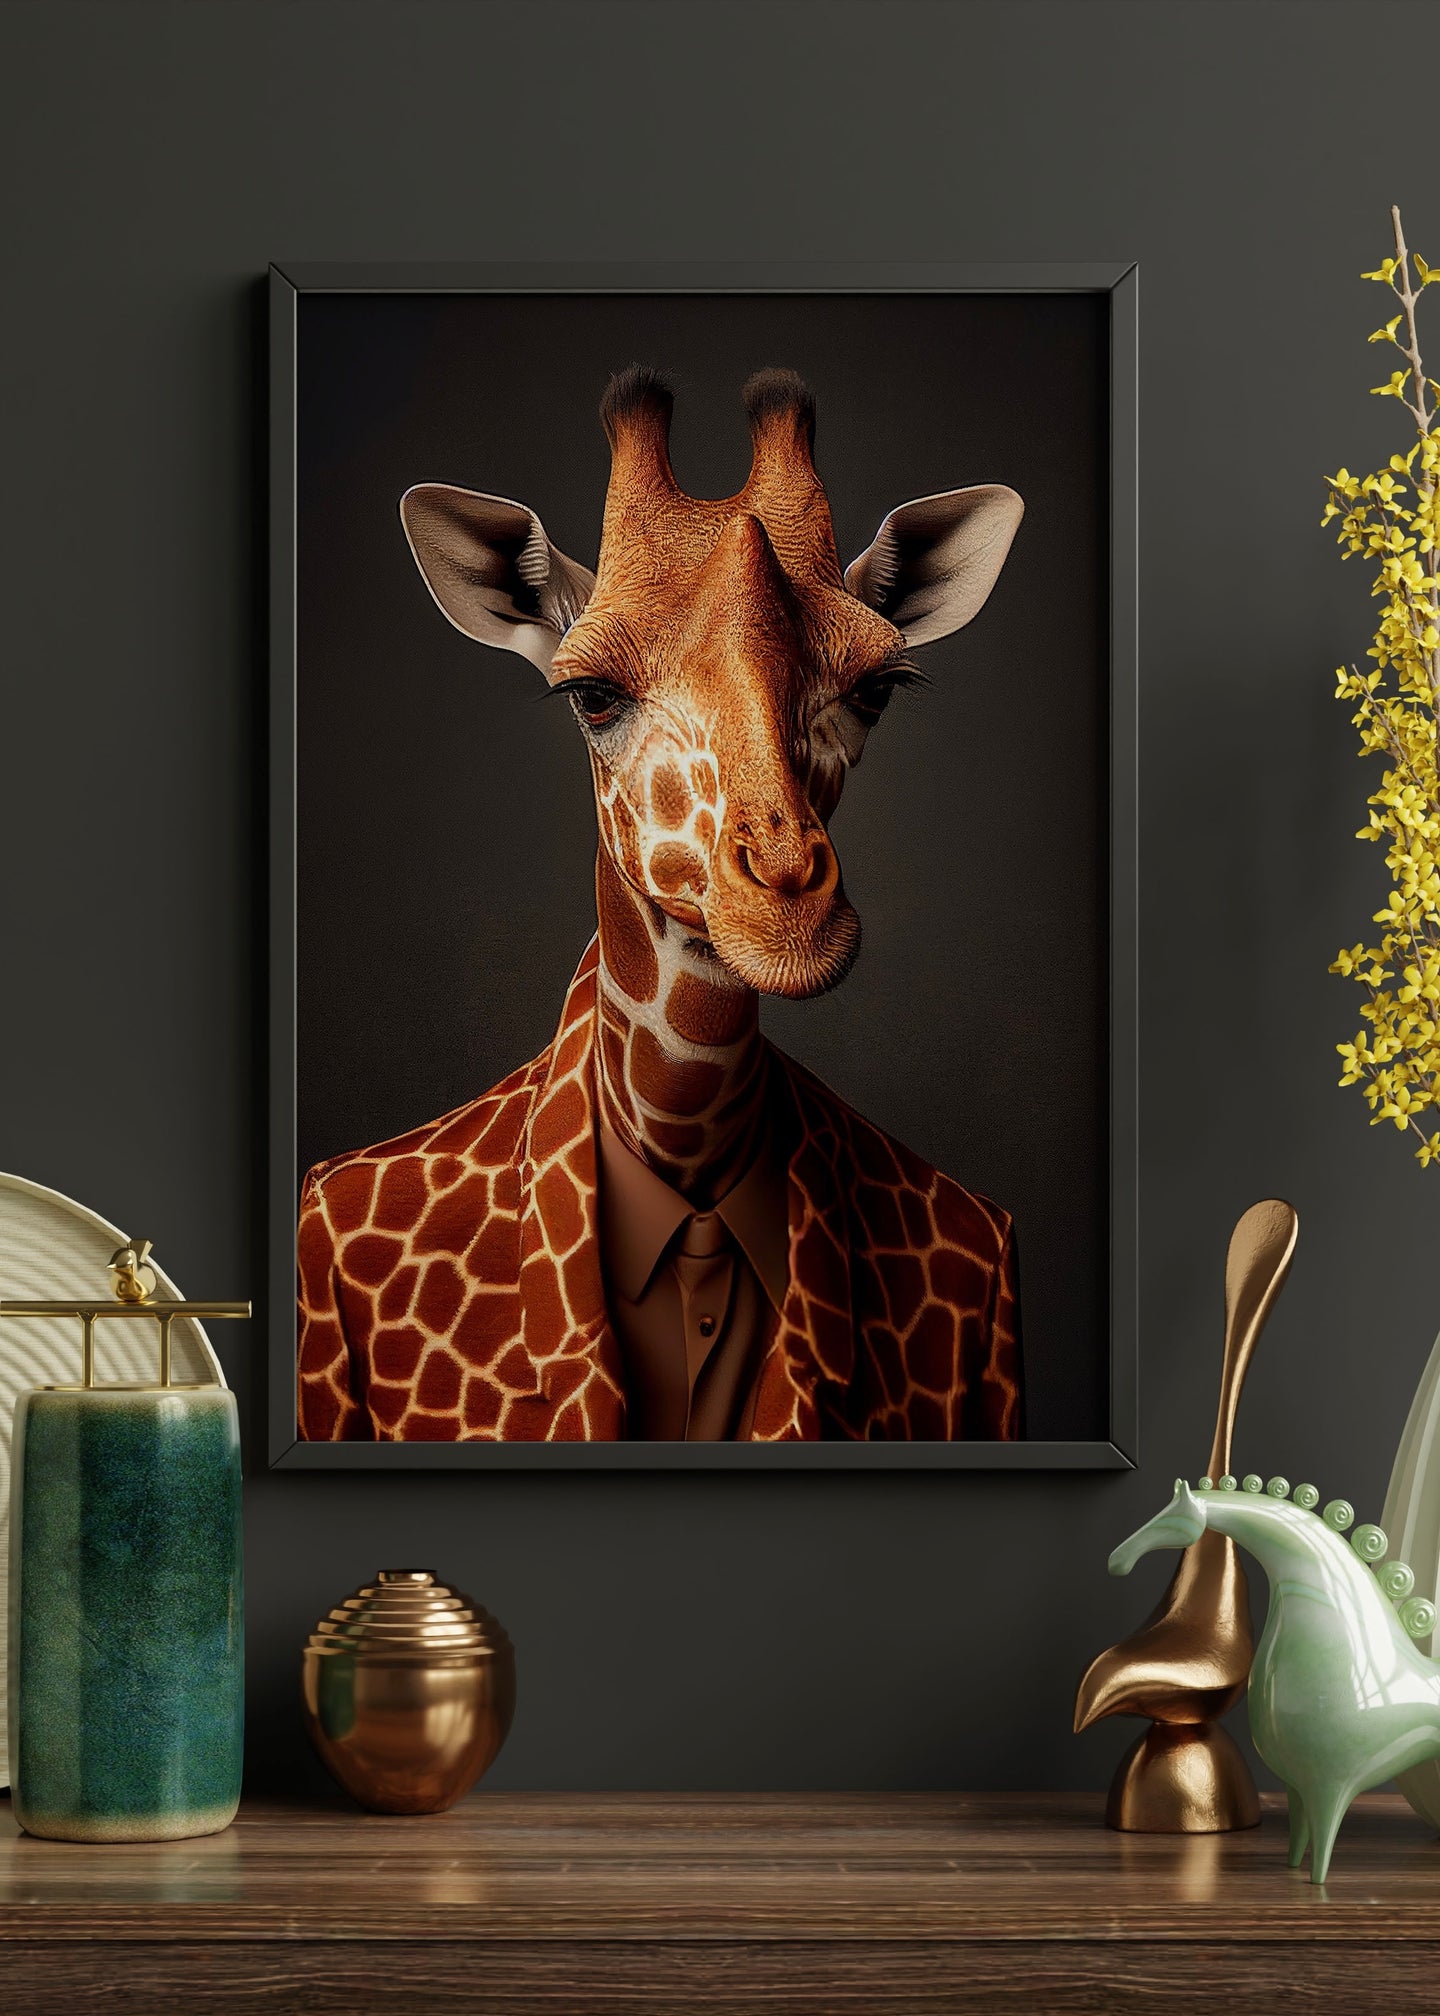 Dapper Giraffe Wall Art | altered giraffe Portrait Wall Art